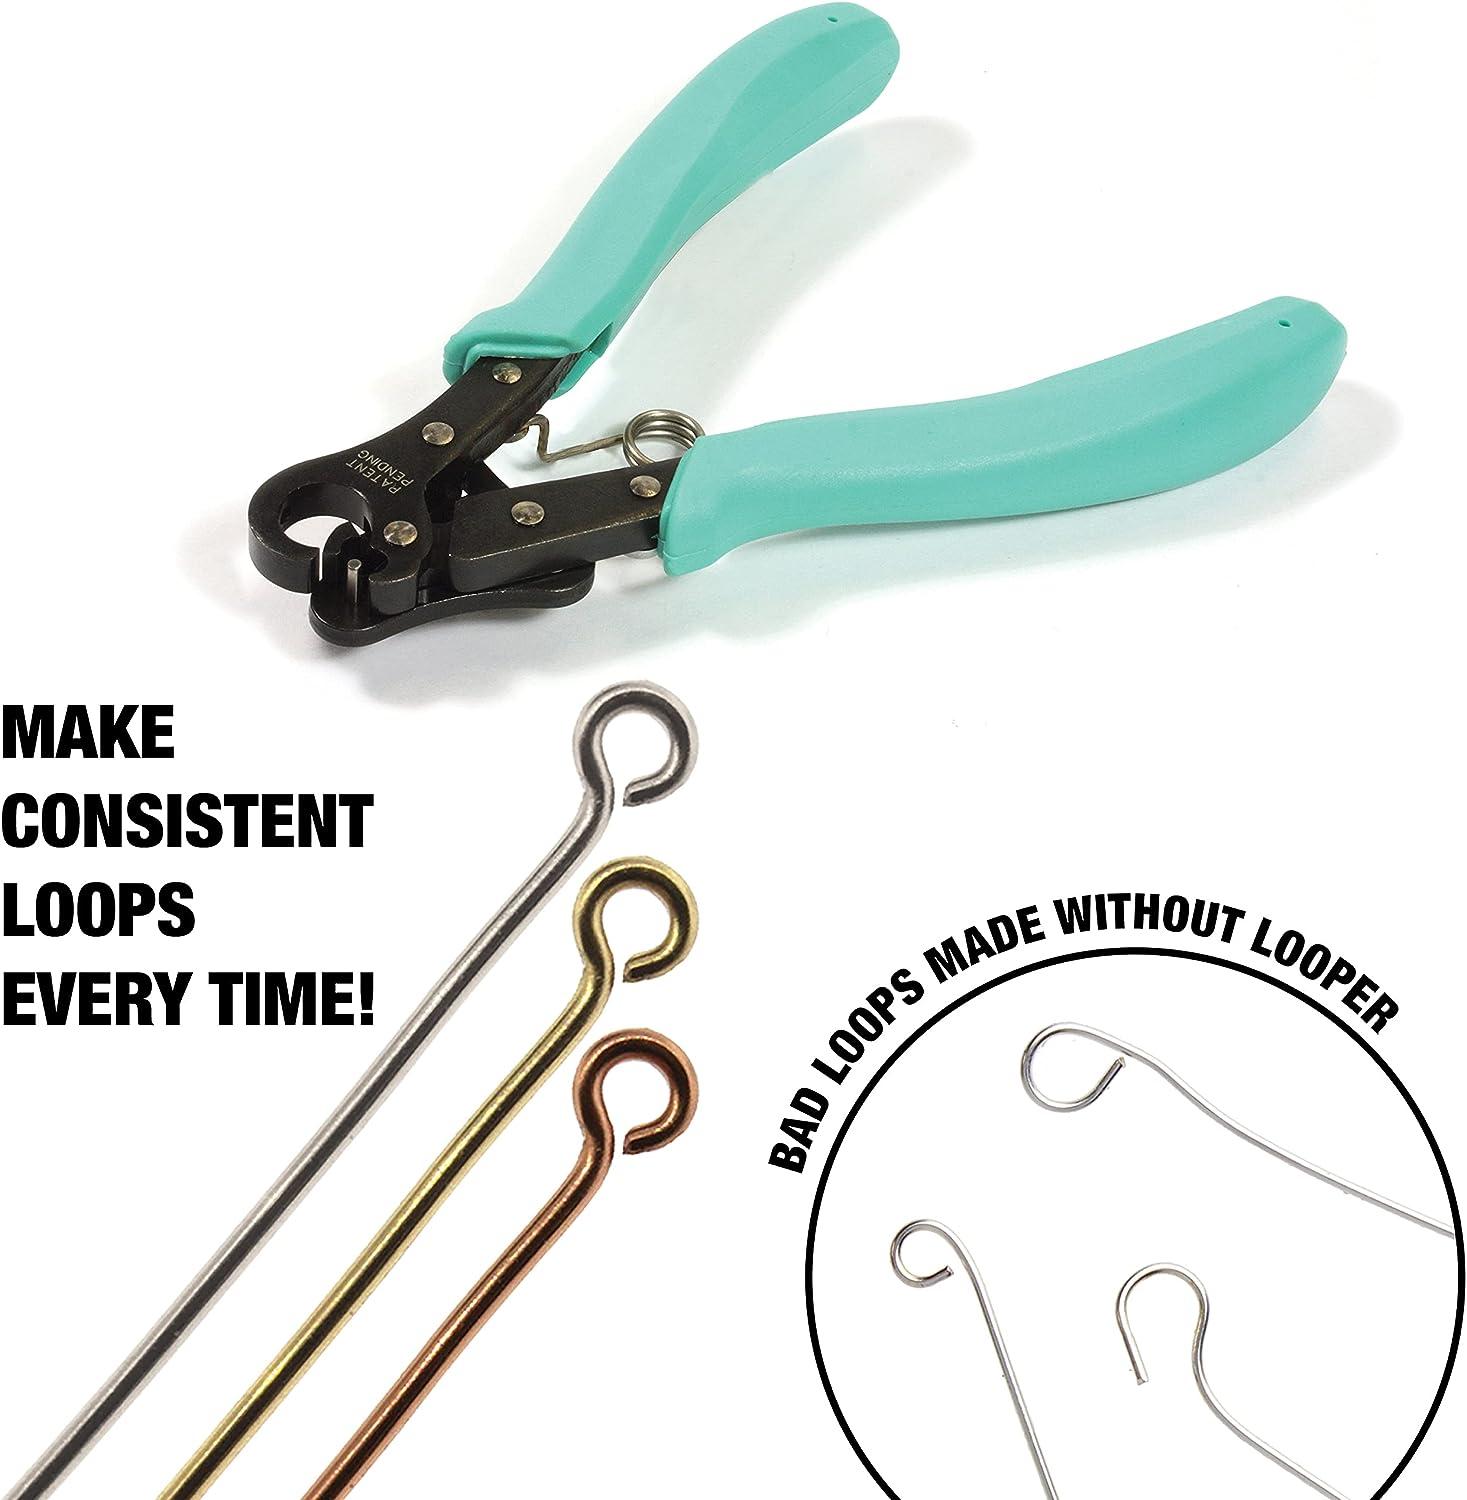 1-Step Looper Pliers